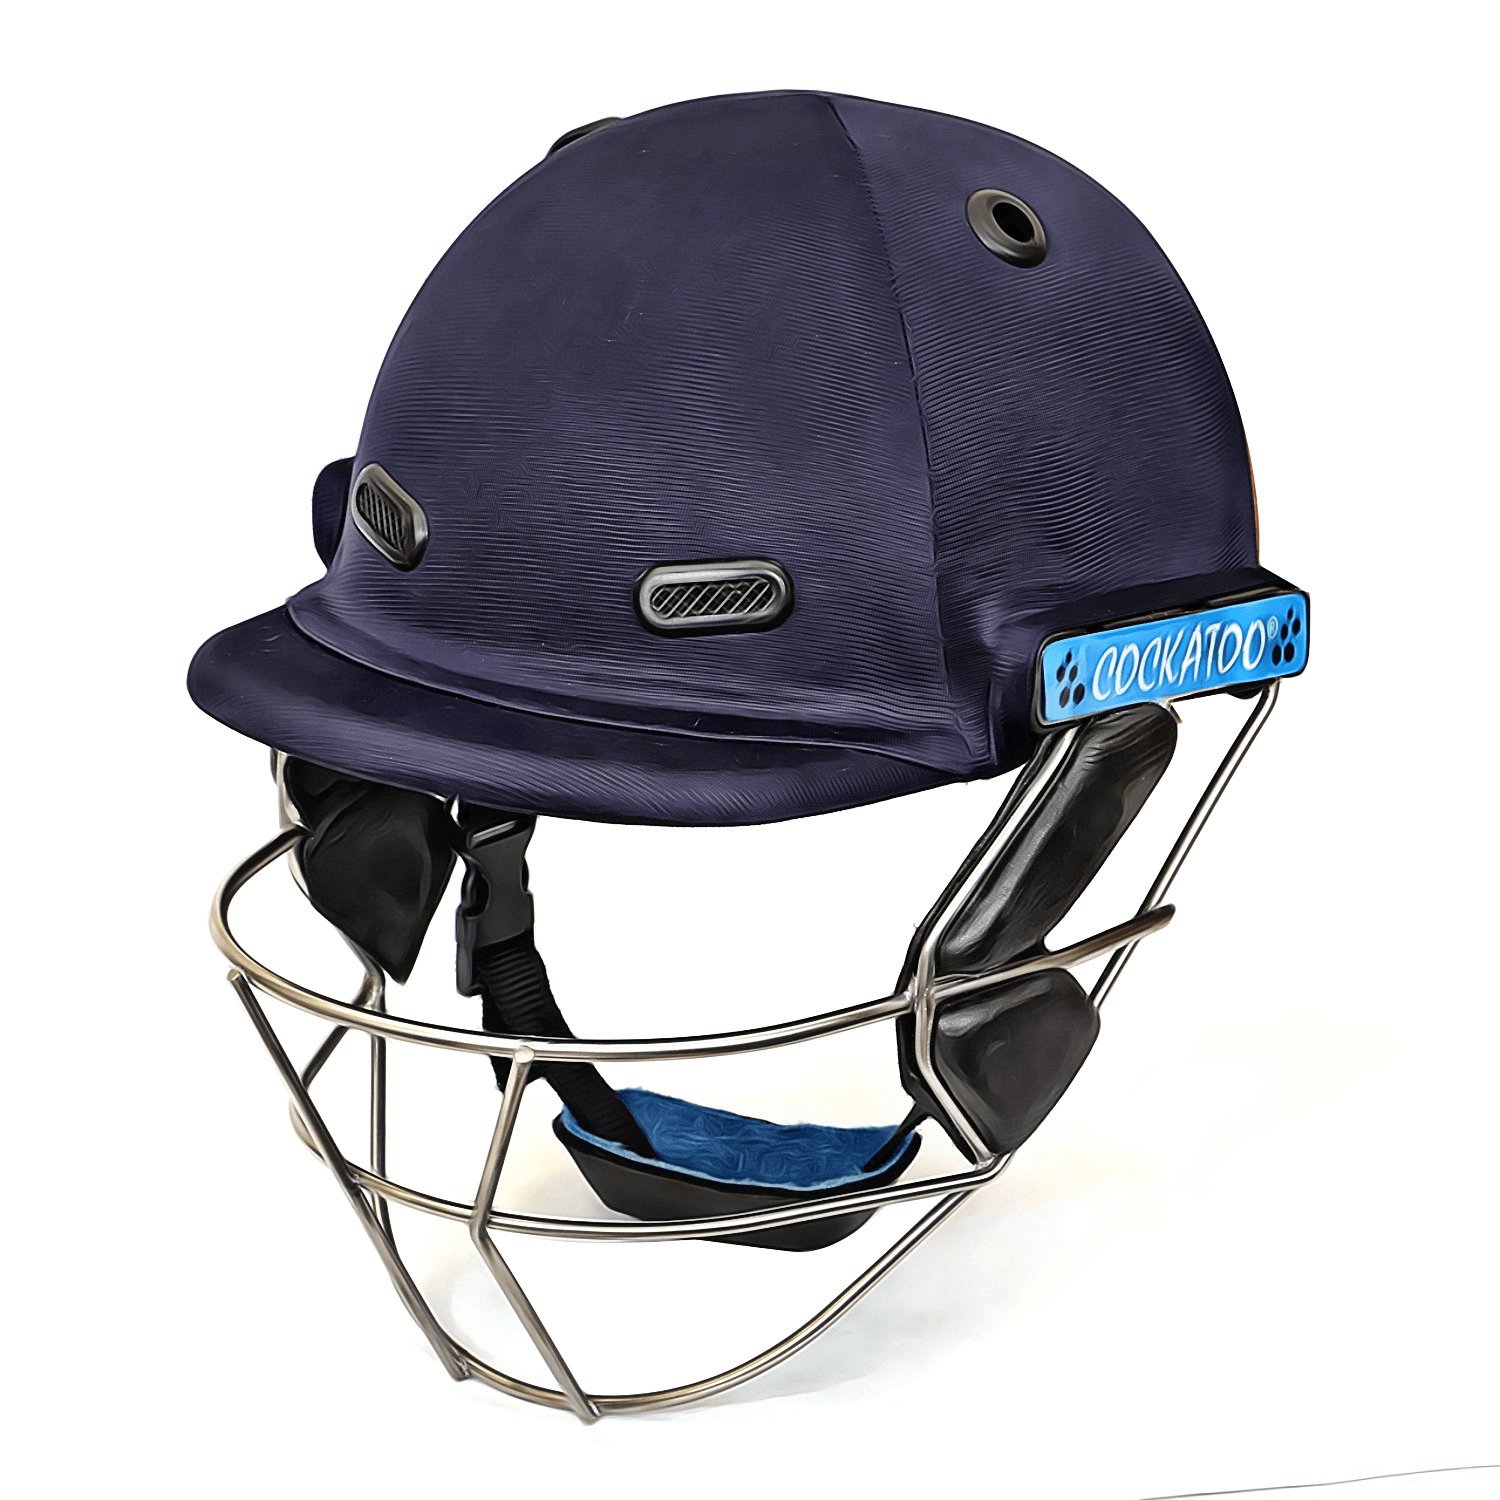 KD Cricket Helmet Stainless Steel Visor Protector Original Helmet